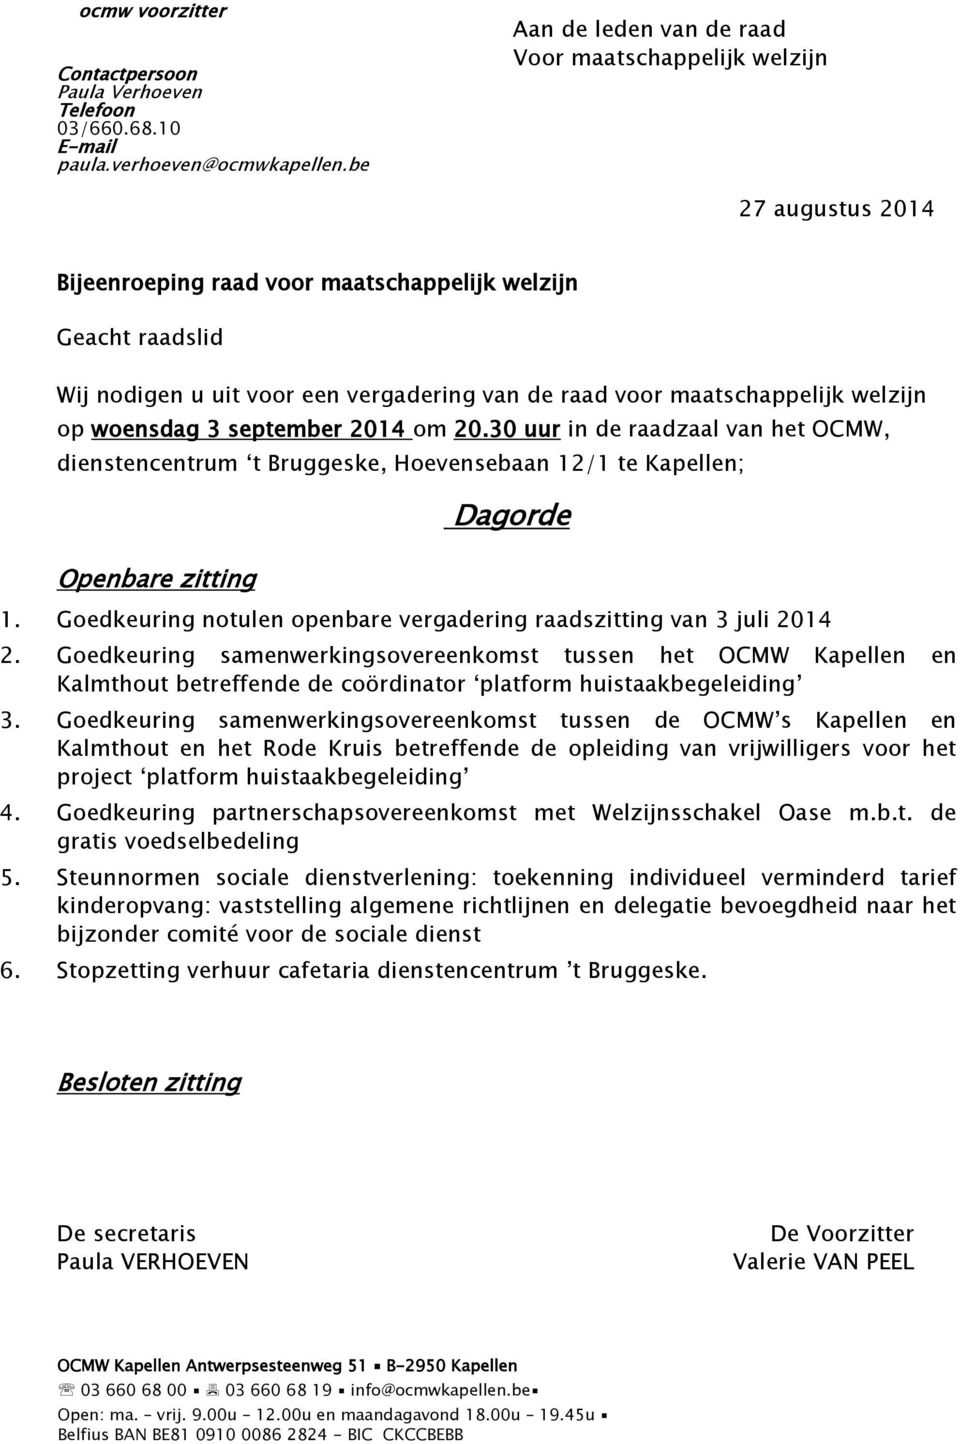 Goedkeuring samenwerkingsovereenkomst tussen het OCMW Kapellen en Kalmthout betreffende de coördinator platform huistaakbegeleiding 3.